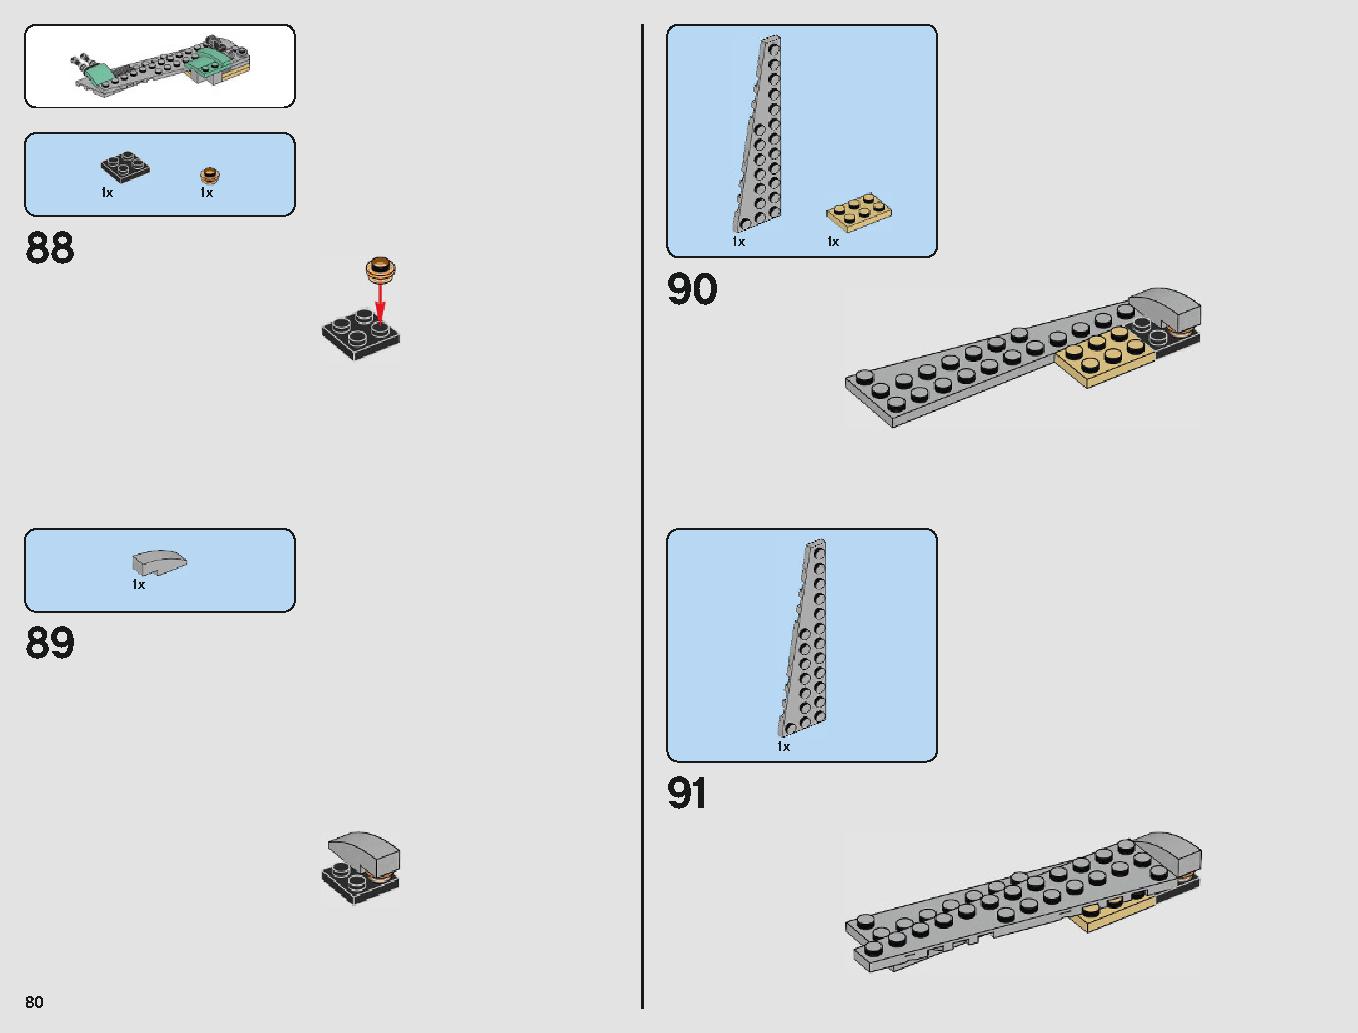 クラウド・シティ 75222 レゴの商品情報 レゴの説明書・組立方法 80 page